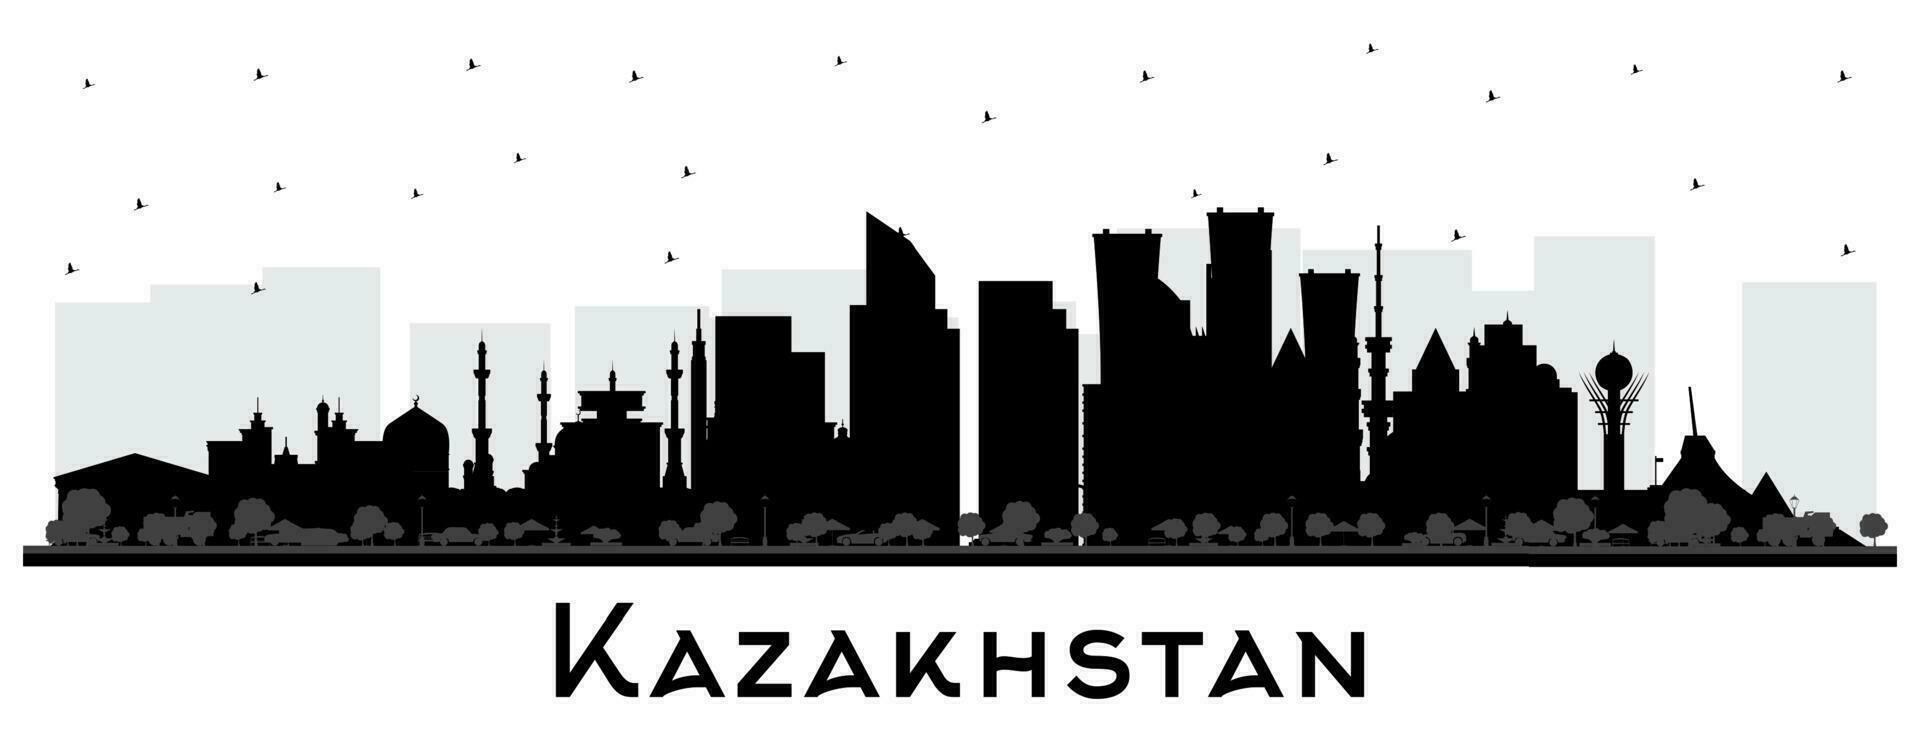 Kazakistan città orizzonte silhouette con nero edifici isolato su bianca. concetto con moderno architettura. Kazakistan paesaggio urbano con punti di riferimento. vettore